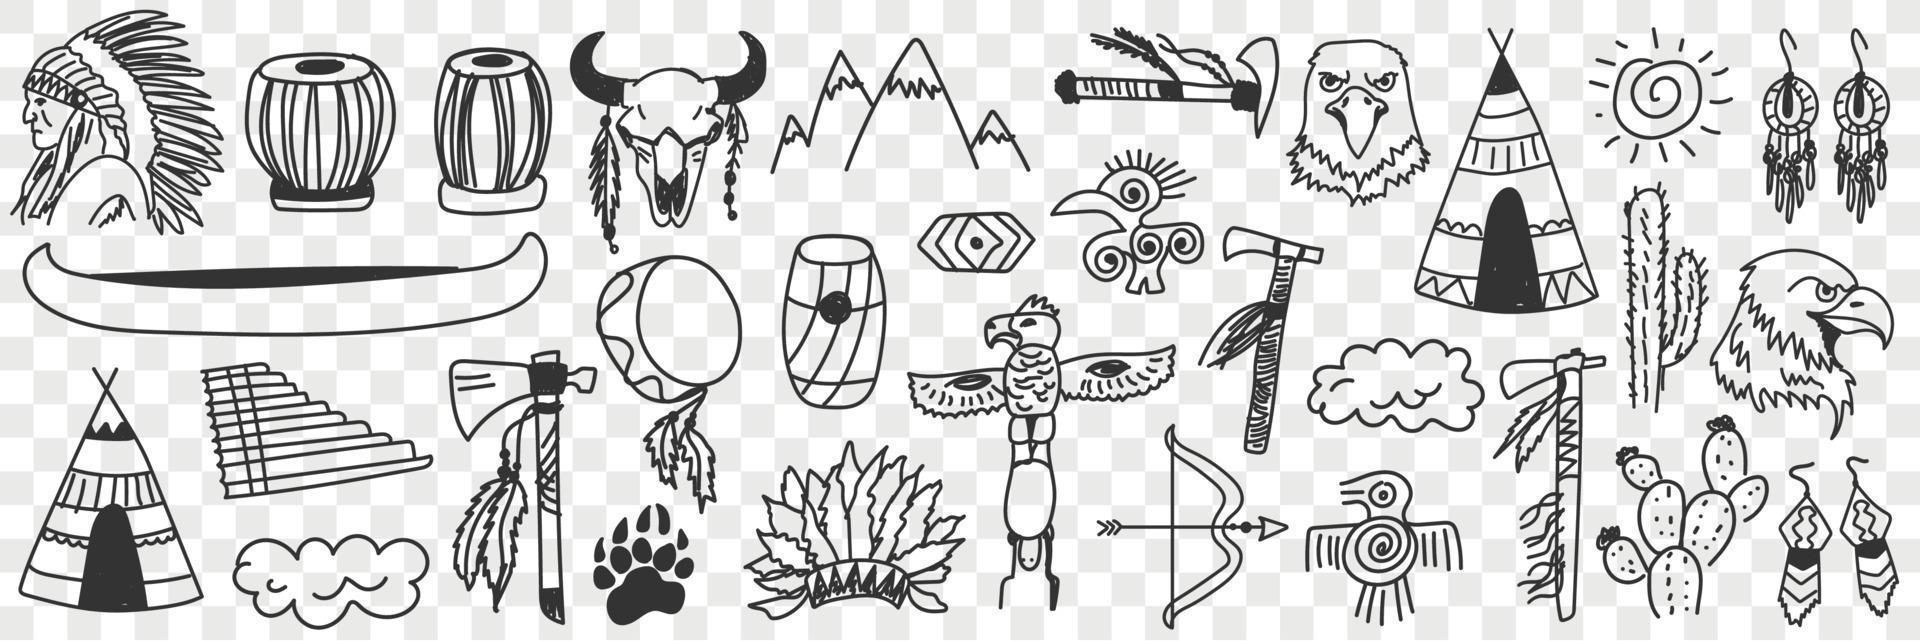 indiano tribù simboli scarabocchio impostare. collezione di mano disegnato vario segni di indiano cultura tradizionale spirituale elementi nel righe isolato su trasparente sfondo vettore